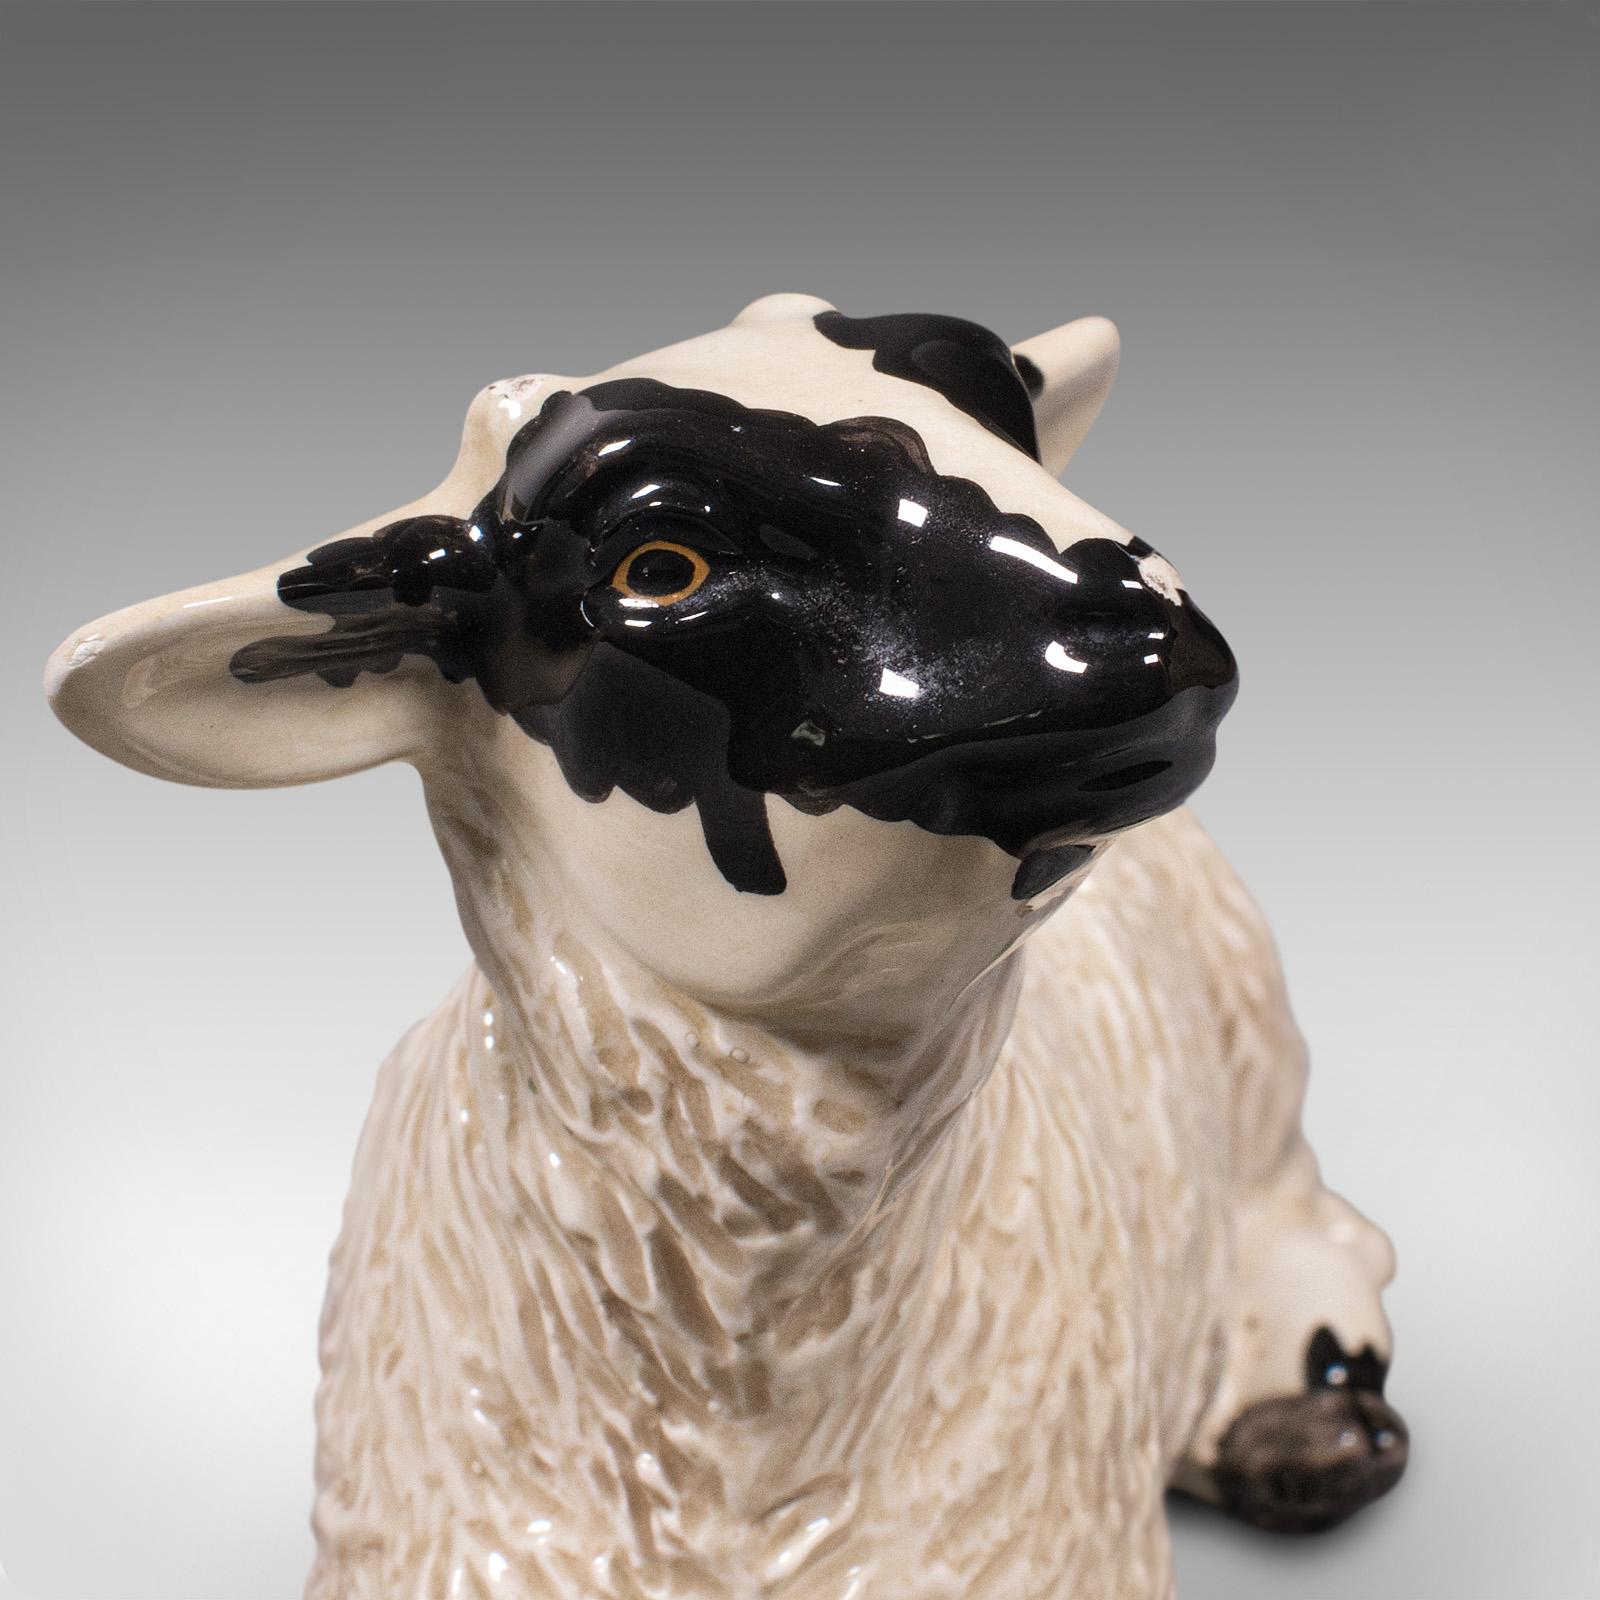 Small Vintage Decorative Lamb, English, Ceramic, Livestock Figure, circa 1990 For Sale 4